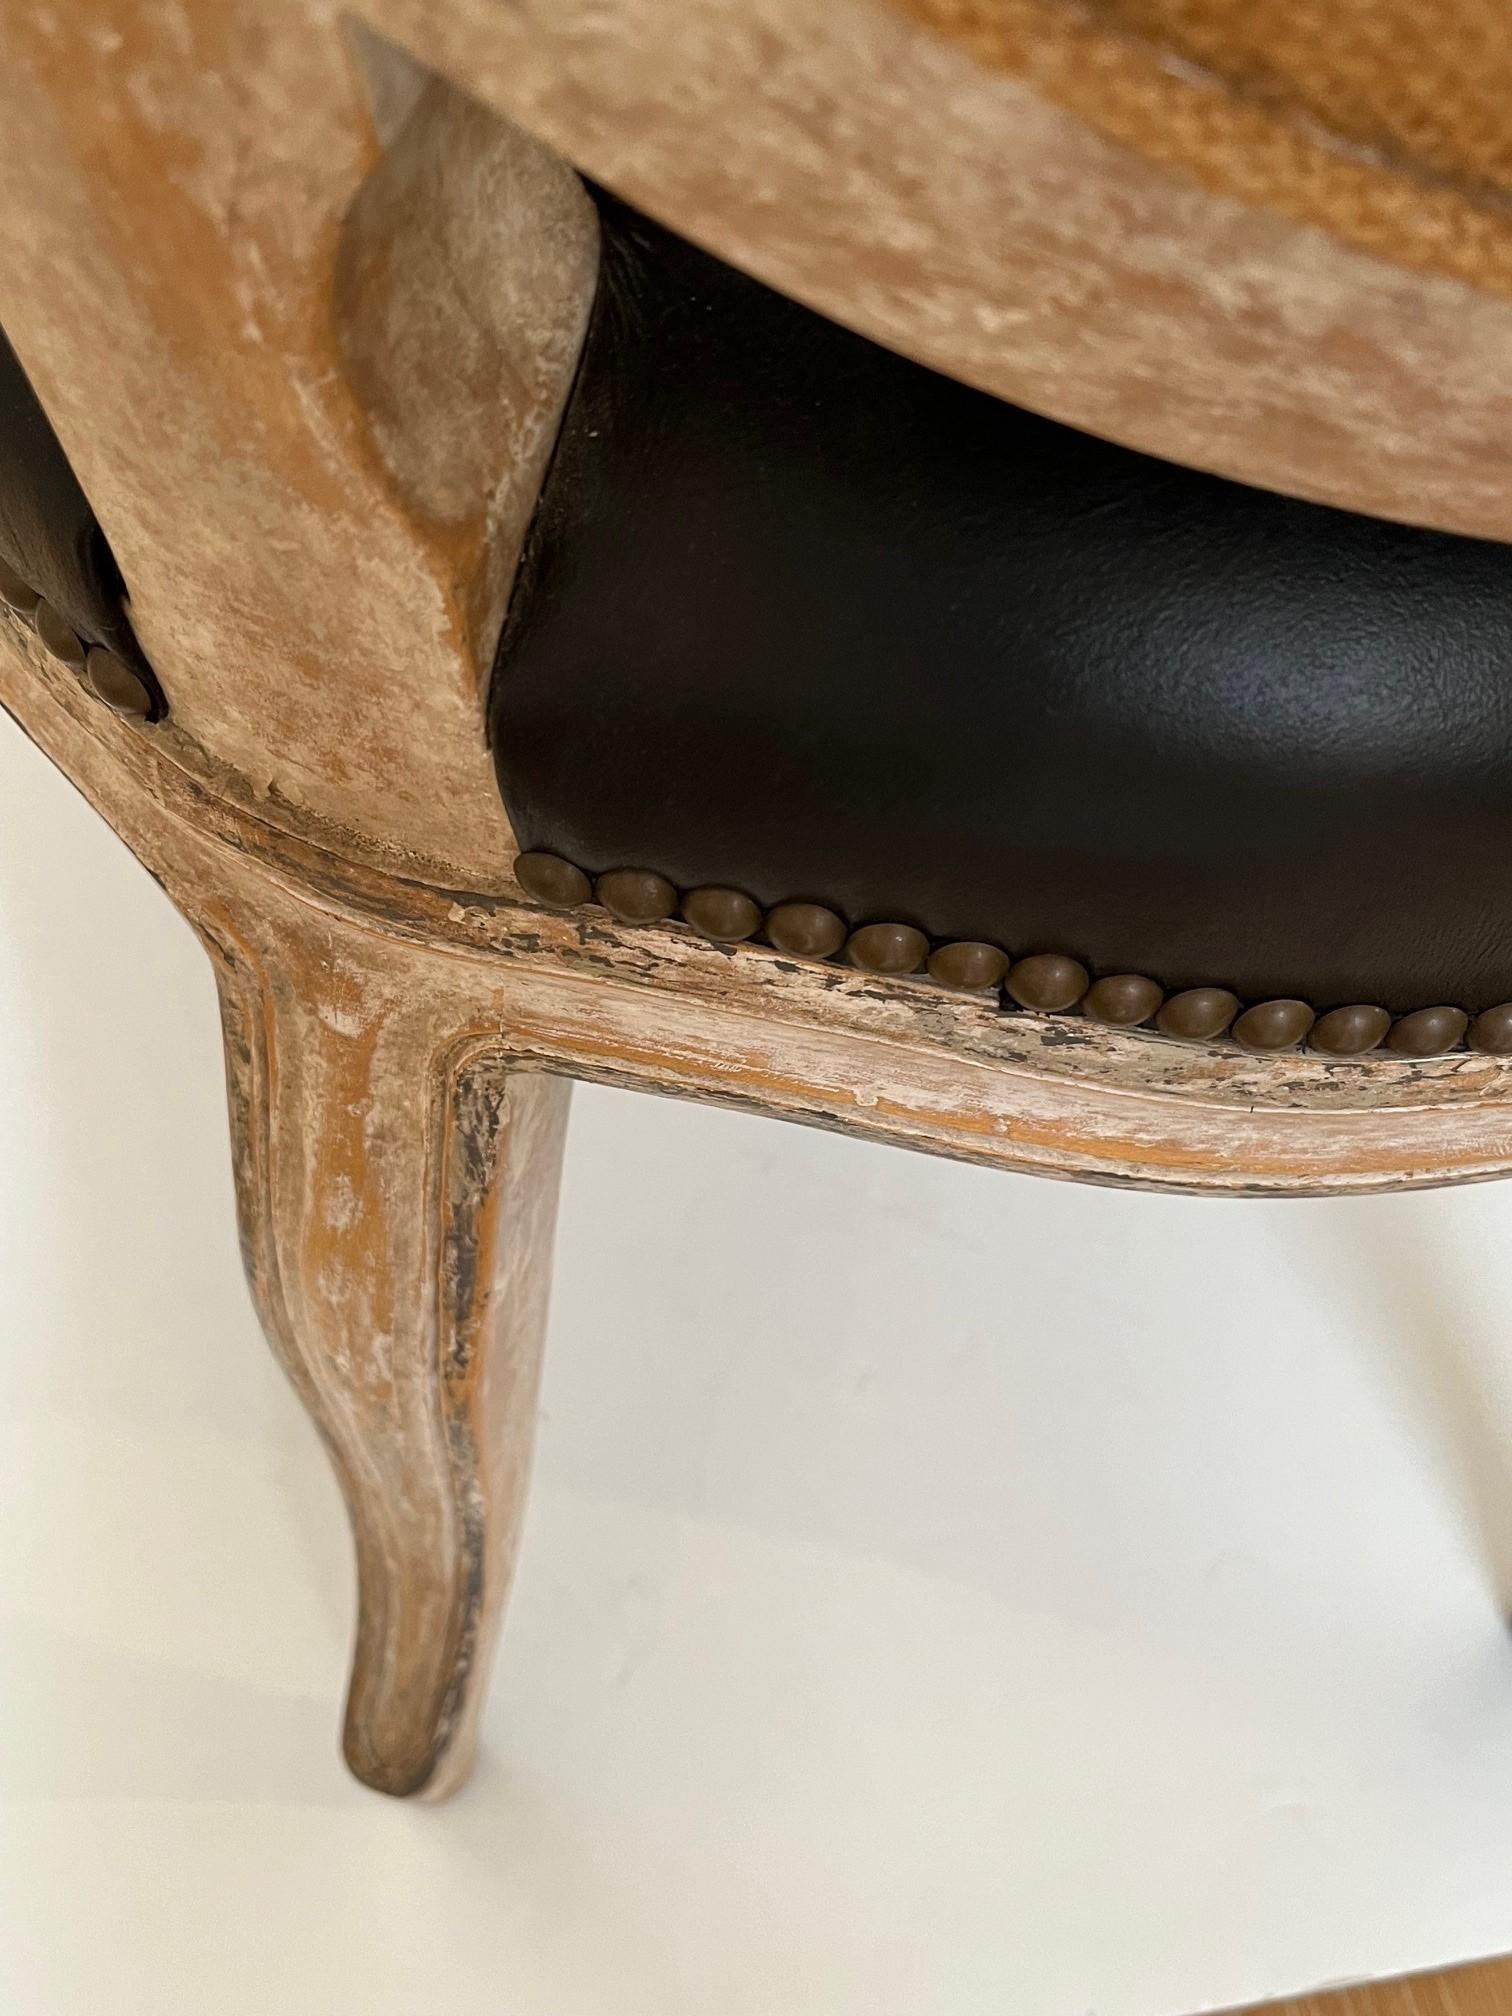 Made to Order Louis XV Style Dining Side Chair, gepolstert in schwarzem Leder mit antikem Messing Nagelkopf Trim am Sitz und innen oval zurück, Massivholzrahmen, Dies ist ein Showroom-Modell
Polsterung: Kundeneigenes MATERIAL